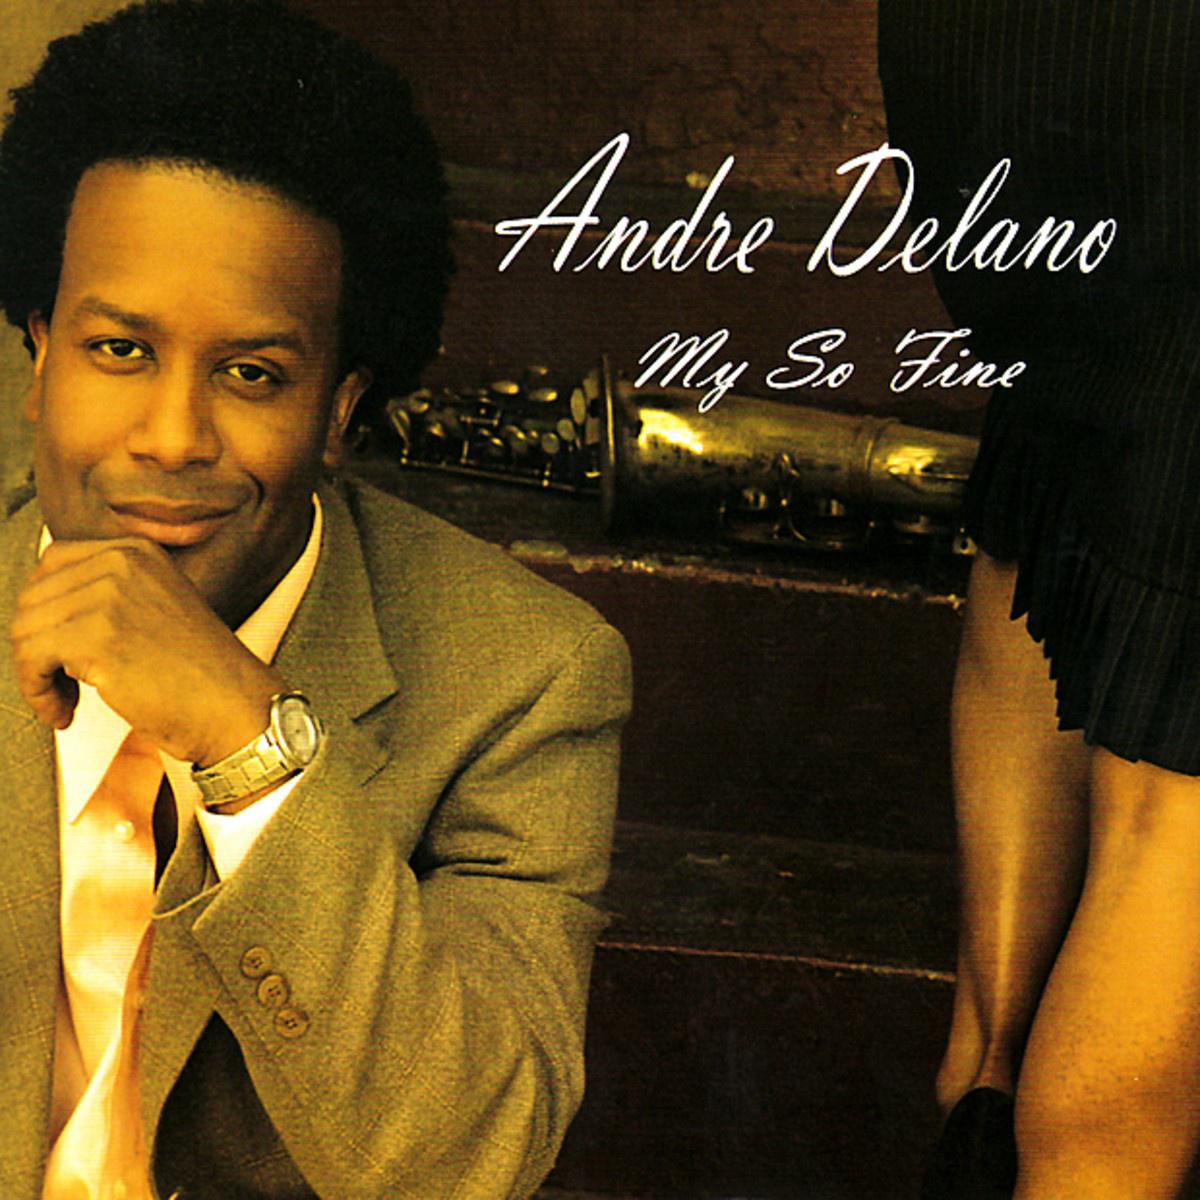 Andre Delano - I Do